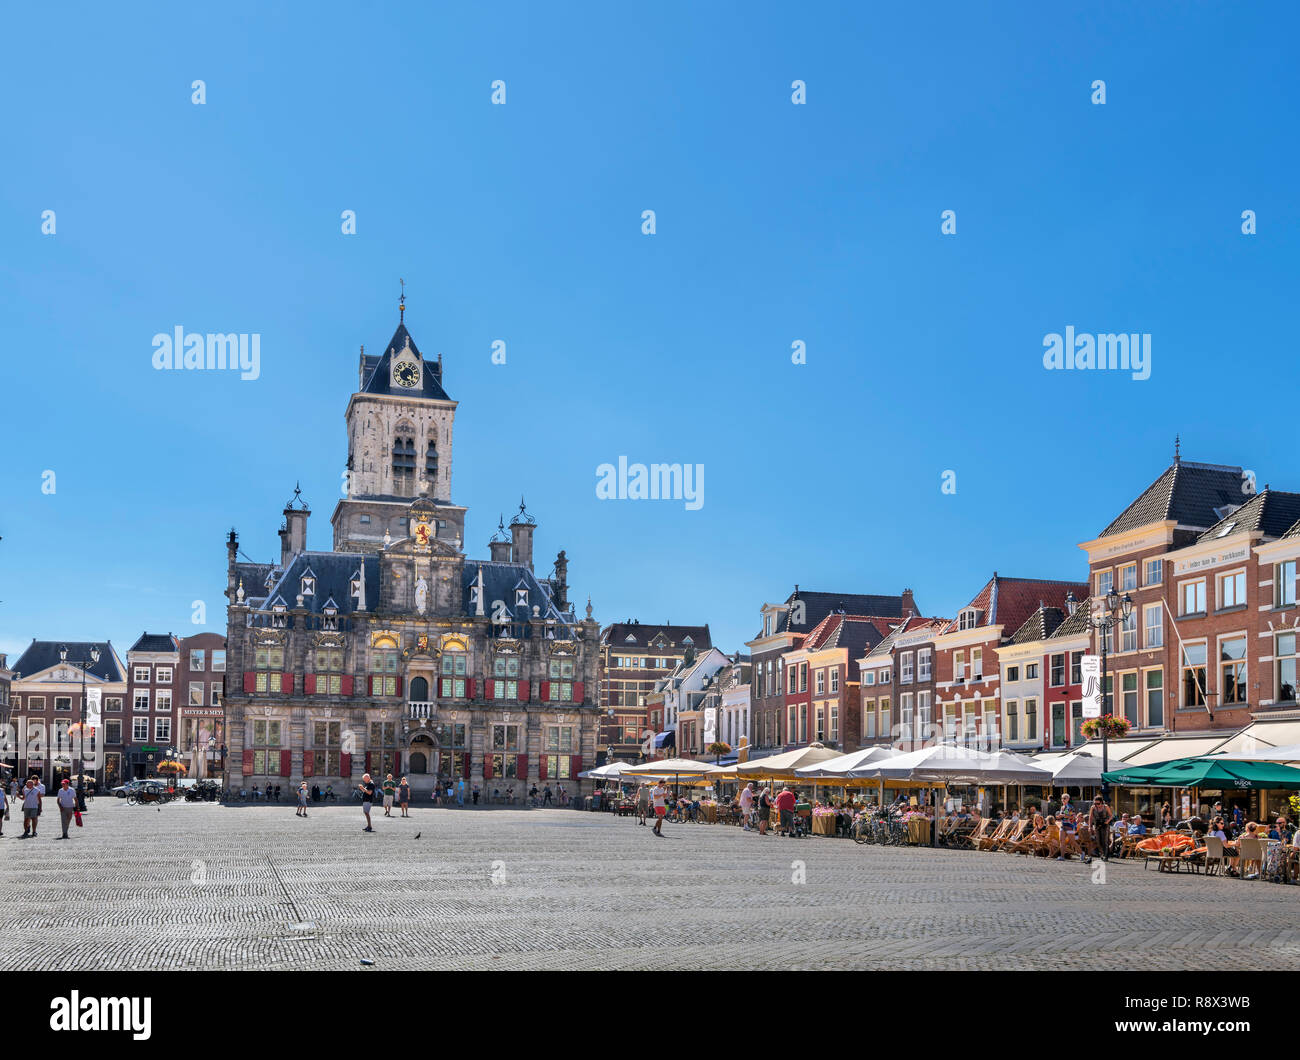 L'hôtel de ville dans le Markt (place du marché), Delft, Zuid-Holland (Hollande méridionale), Pays-Bas Banque D'Images